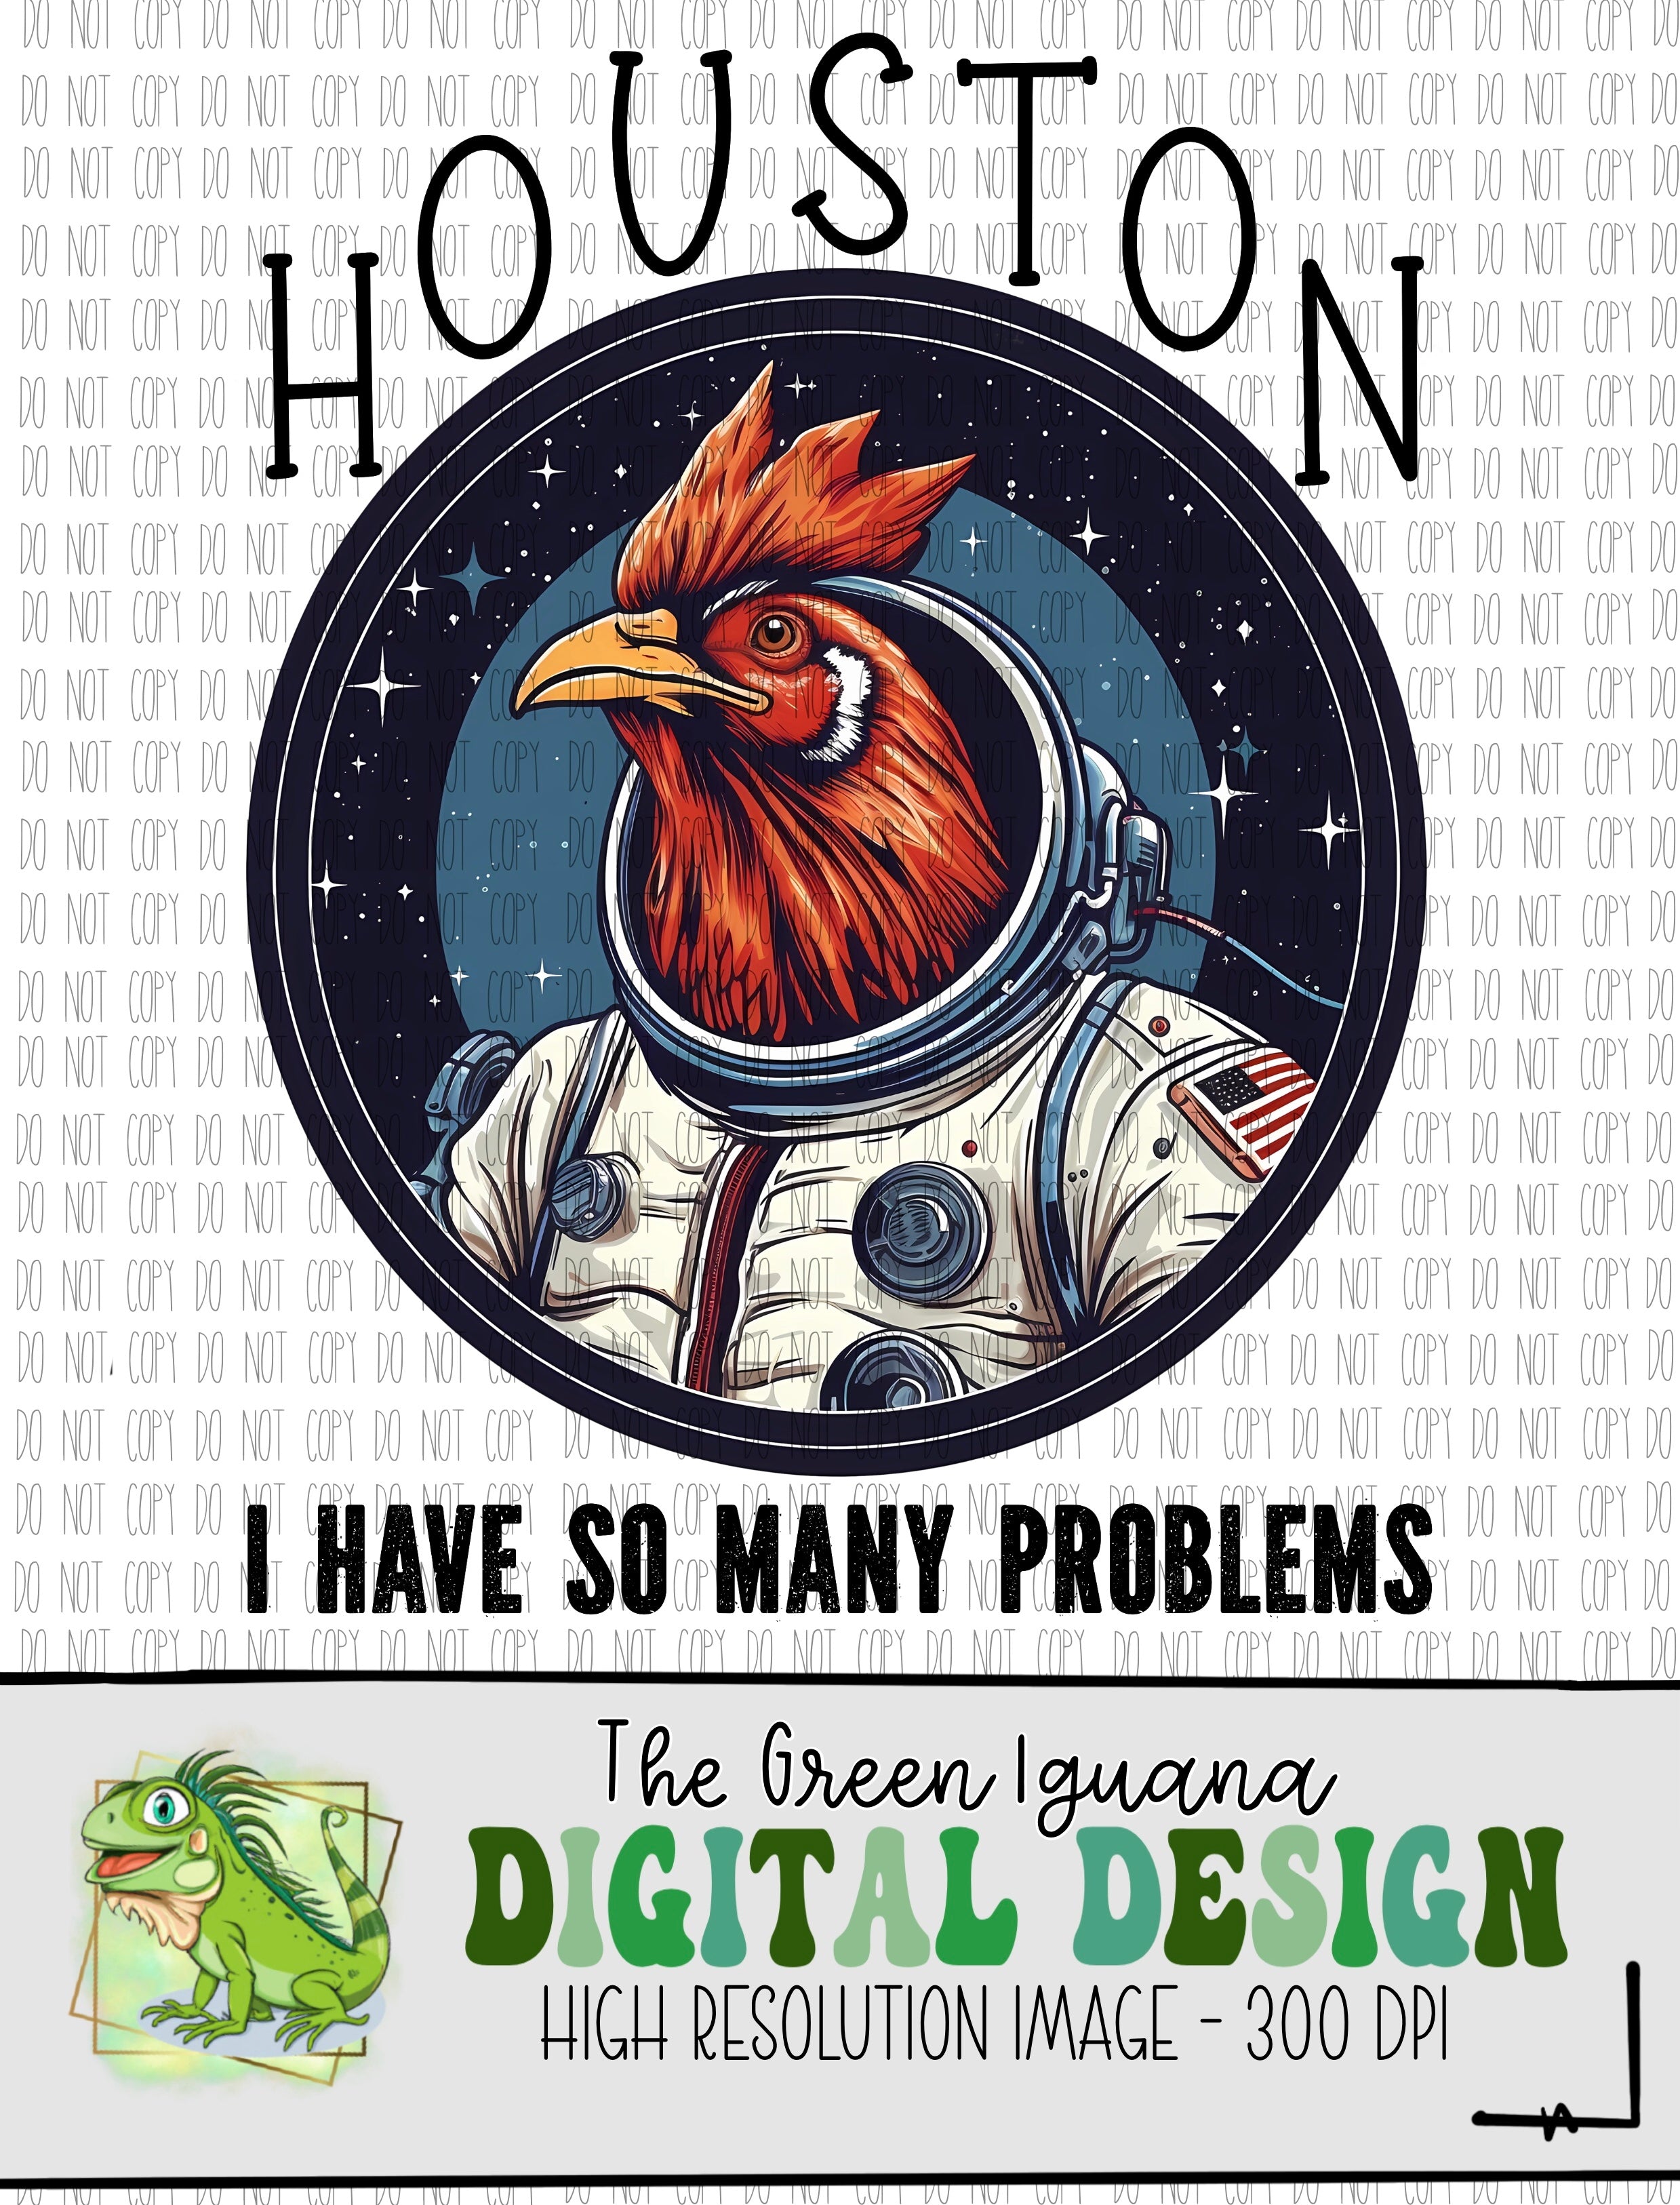 Houston, I have so many problems - DIGITAL